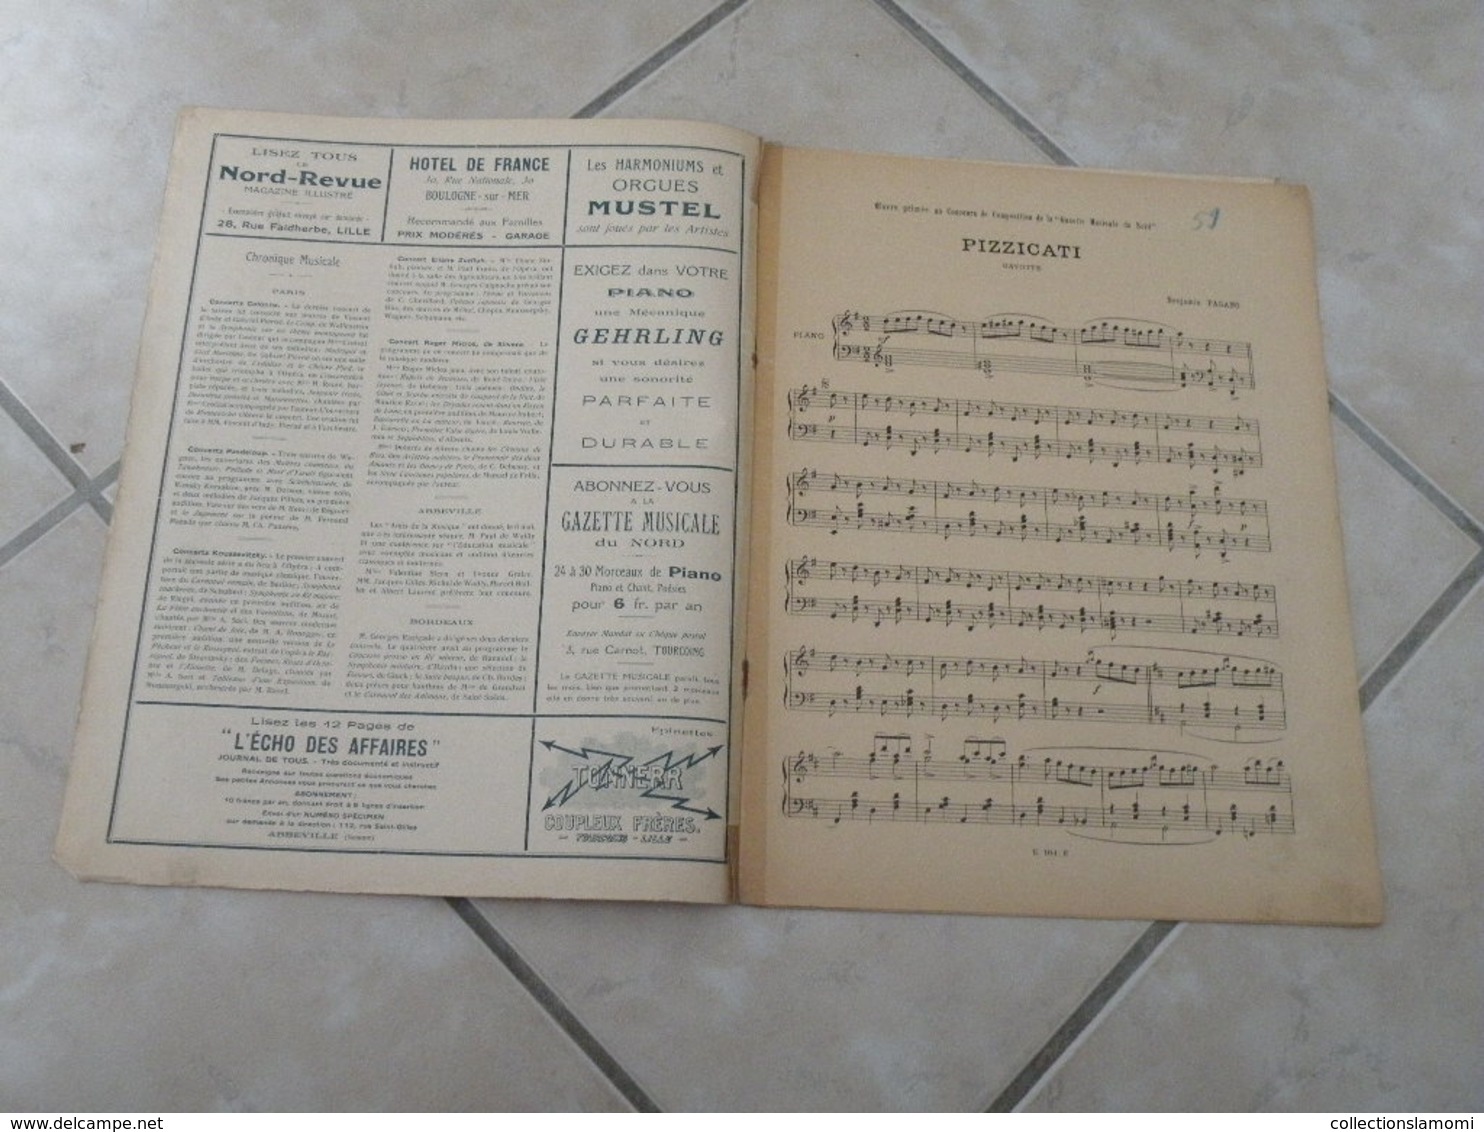 La Gazette Musical Du Nord -(Pizzicati, Pour Un Baiser & Sur Le Rhône) - Partition (Piano) Juillet 1923 - Tasteninstrumente